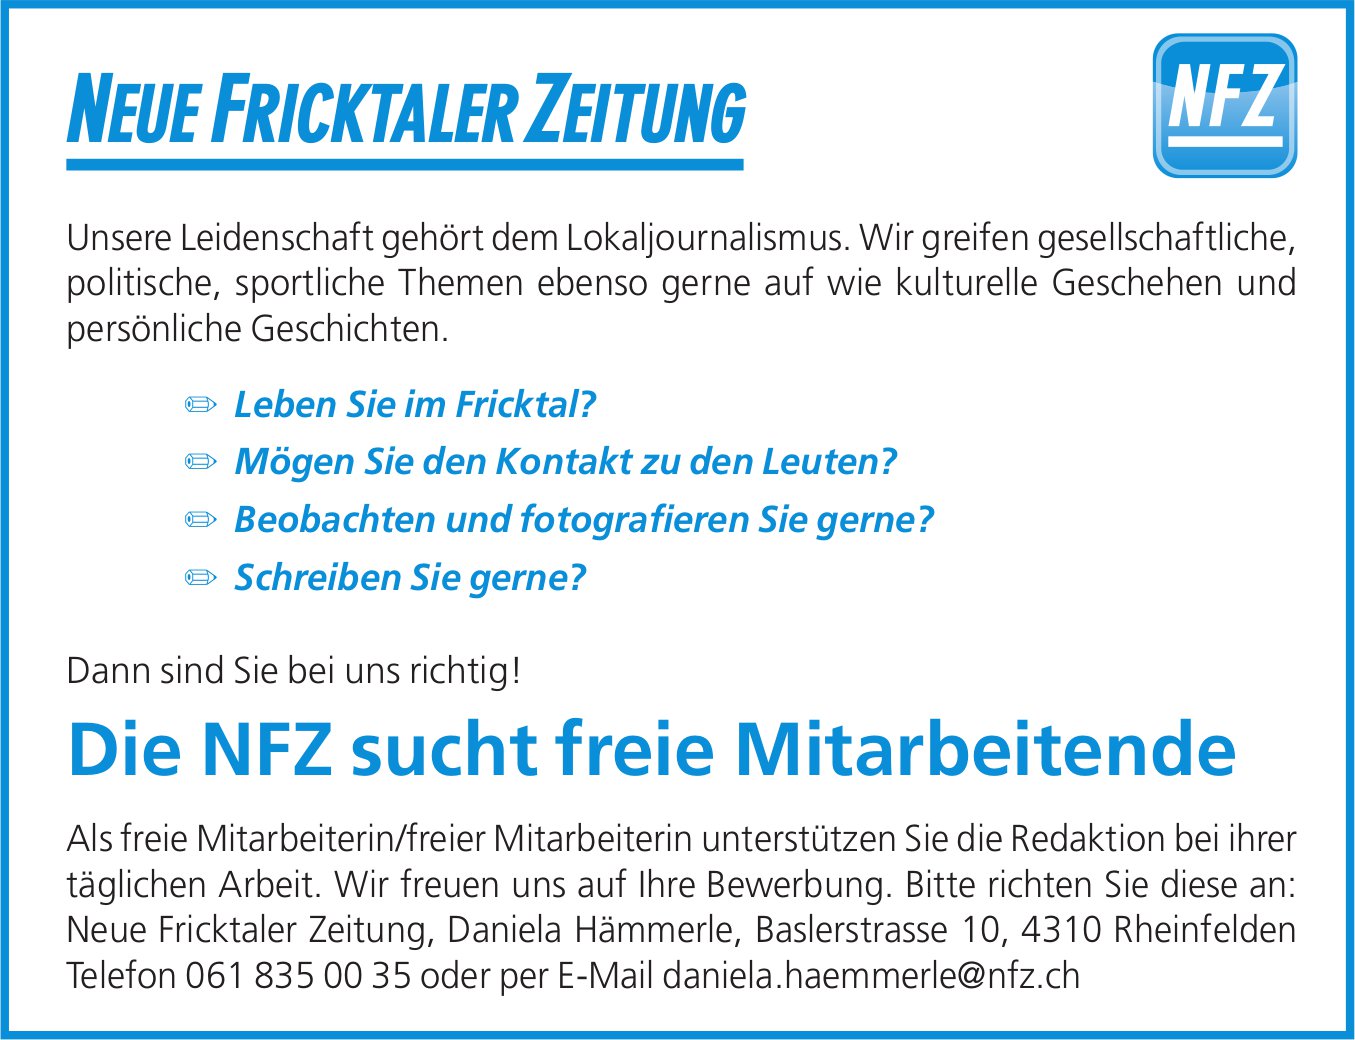 Freie Mitarbeitende, Neue Fricktaler Zeitung, Rheinfelden, gesucht